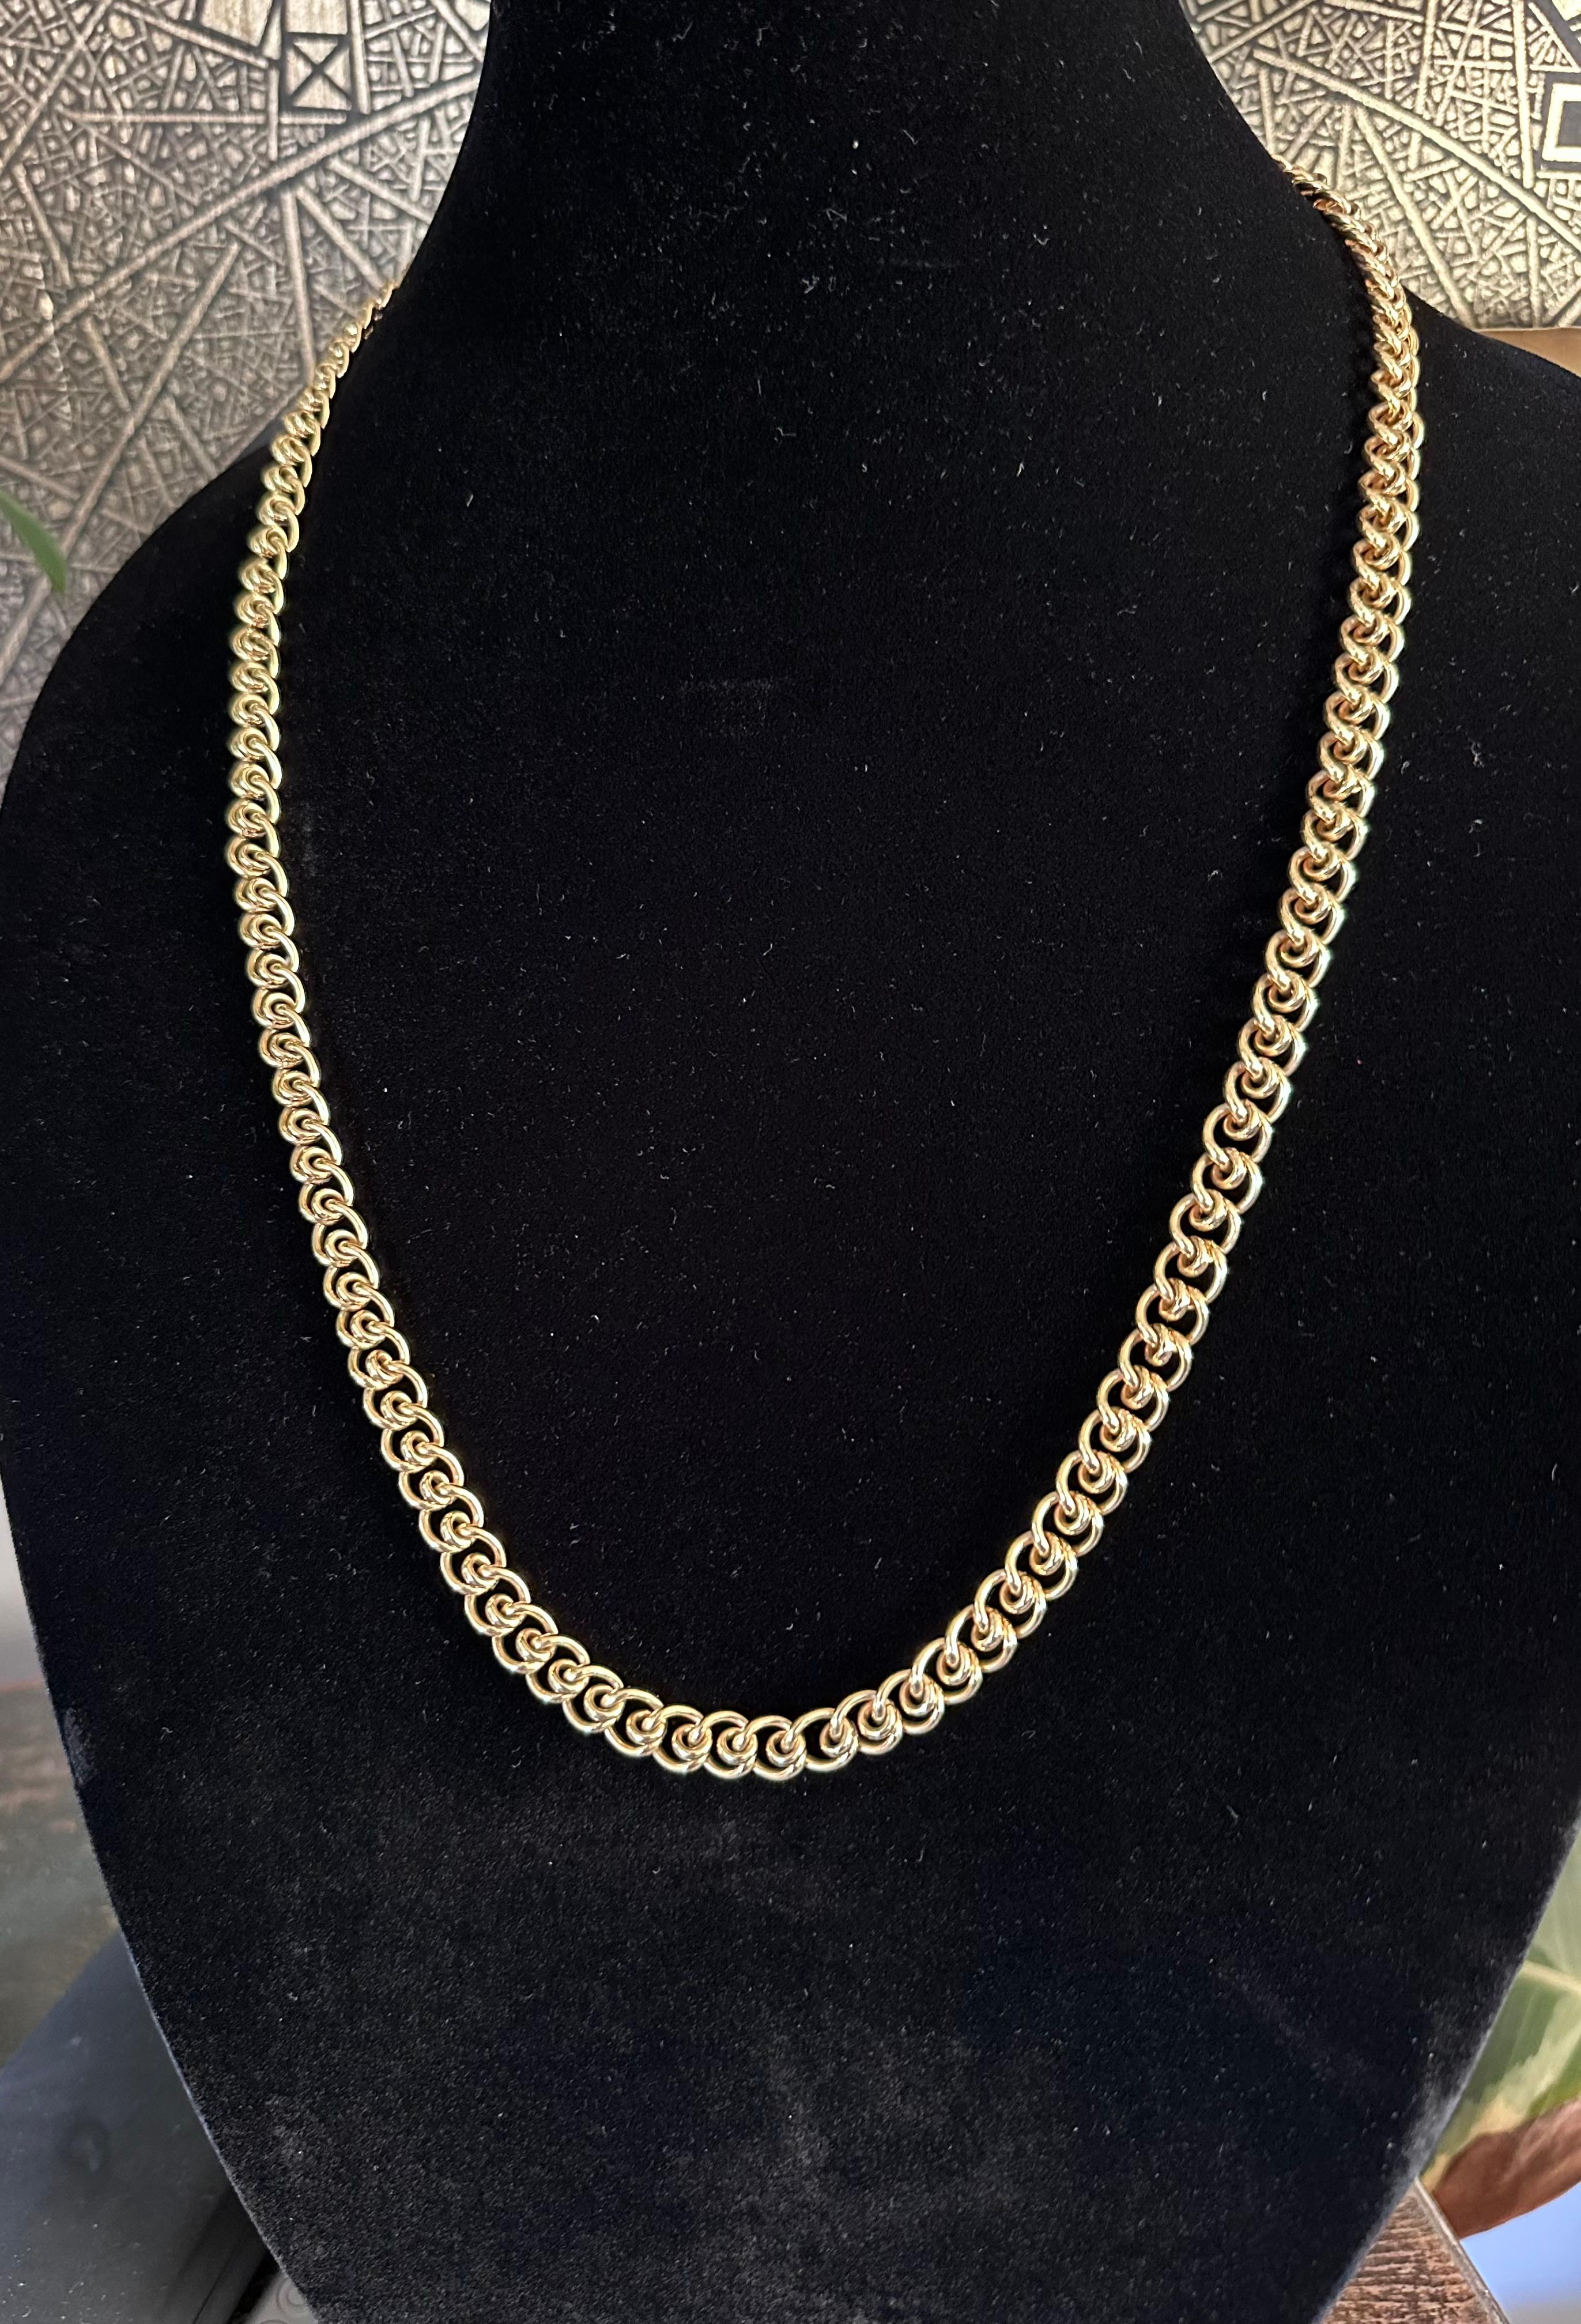 Tiffany & Co.  1970's
31 Zoll lange komplizierte Link Halskette 
Halskette aus 18 Karat Gelbgold.
Gewicht  3.25 OZ 0r ( 100 g) 
CIRCA 1970 
Signiert Tiffany & Co und Tiffany Kratzer Inventarnummern. 
Schöne lange Kette,  Gut versorgt, 